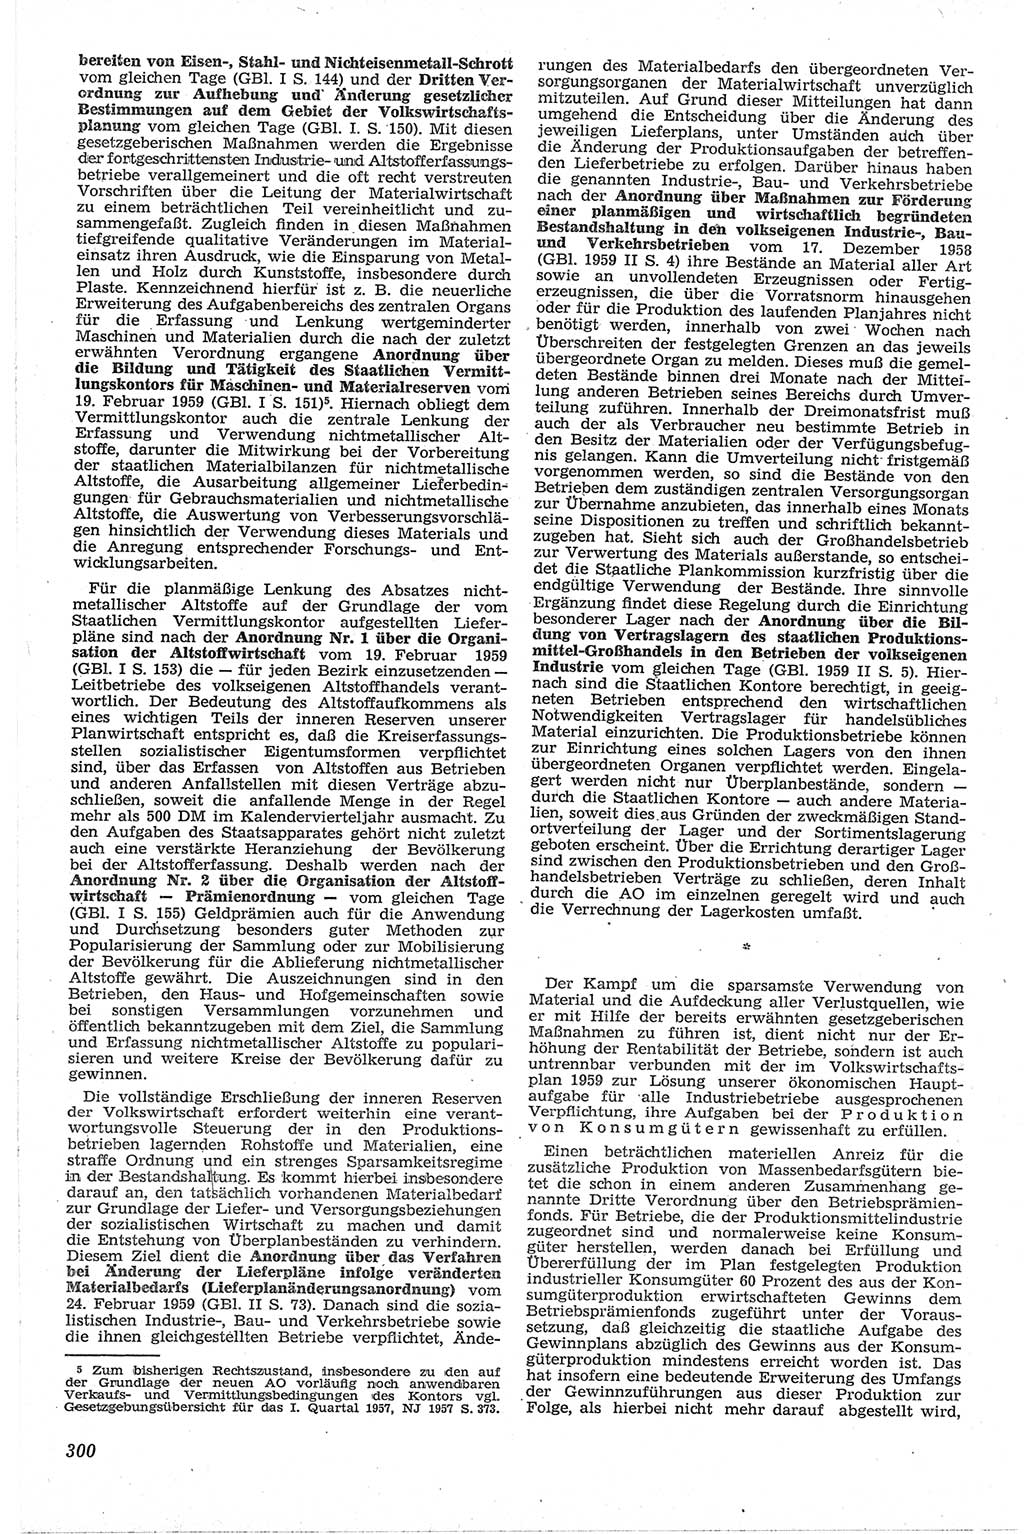 Neue Justiz (NJ), Zeitschrift für Recht und Rechtswissenschaft [Deutsche Demokratische Republik (DDR)], 13. Jahrgang 1959, Seite 300 (NJ DDR 1959, S. 300)